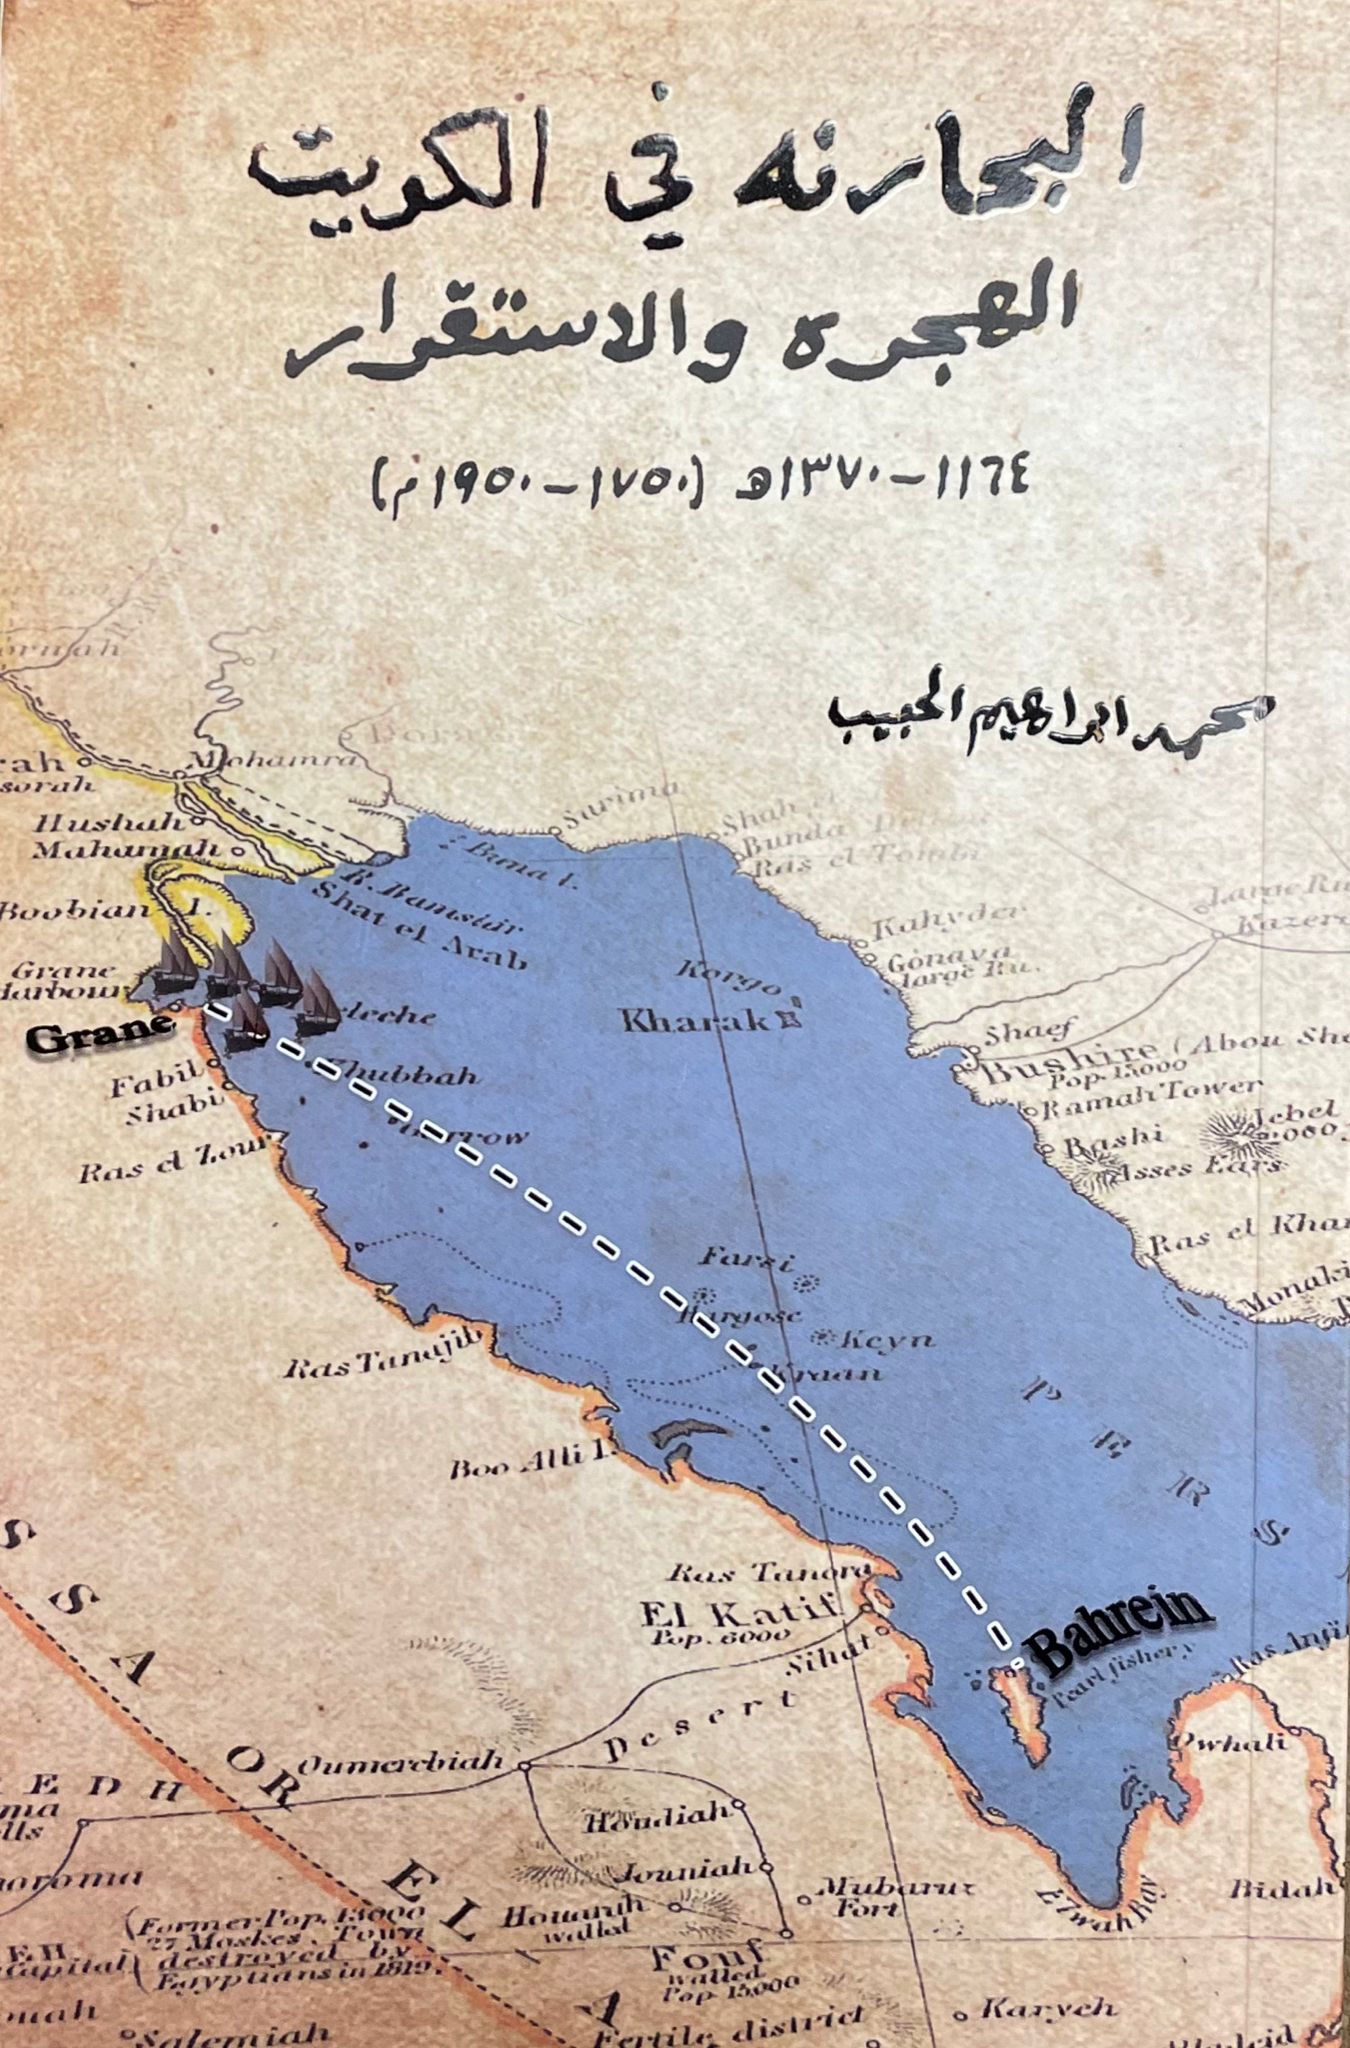 البحارنة في الكويت: الهجرة والاستقرار 1750 - 1950